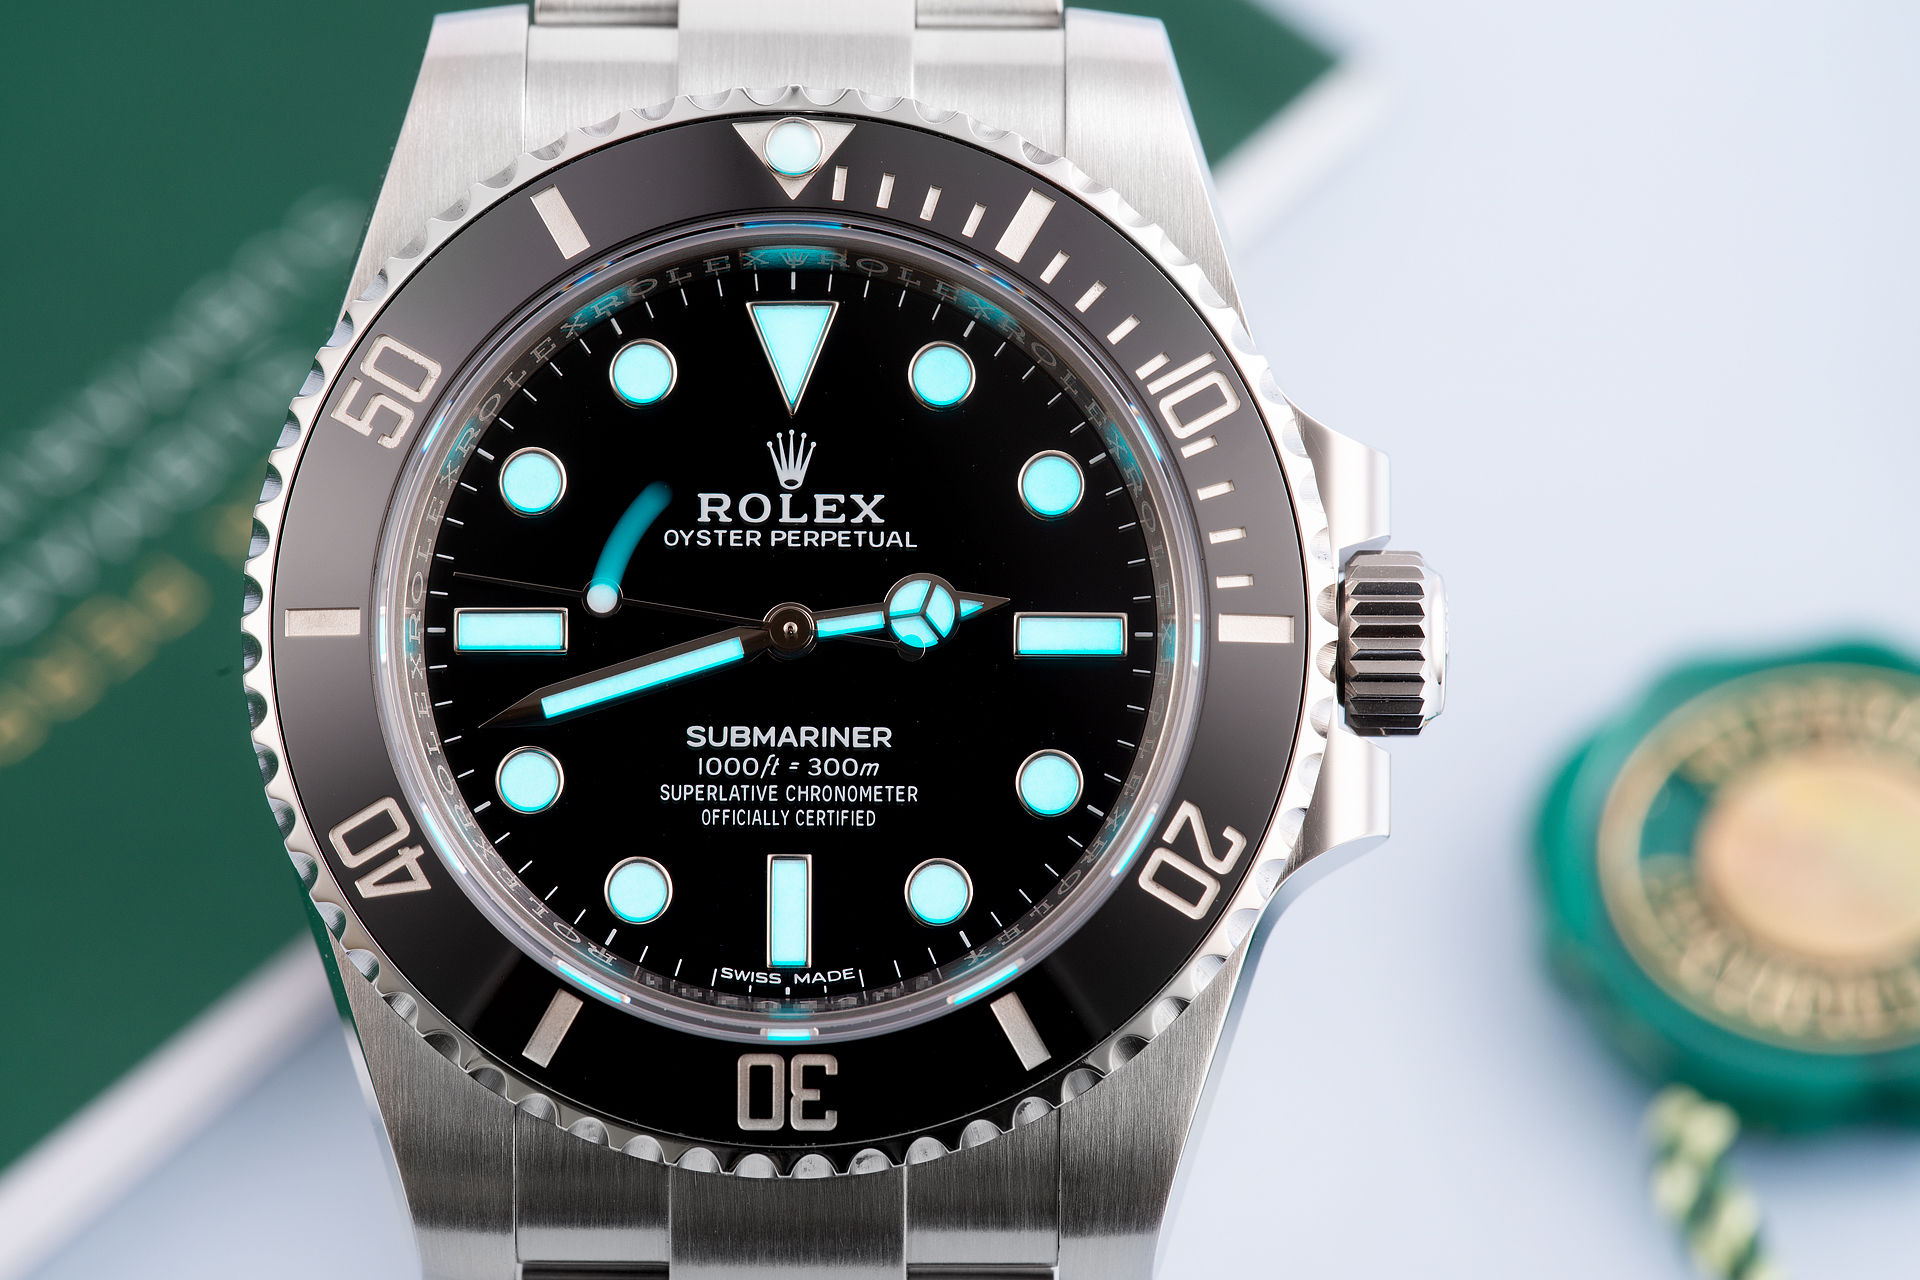 ref 114060 | Box & Certificate | Rolex Submariner 